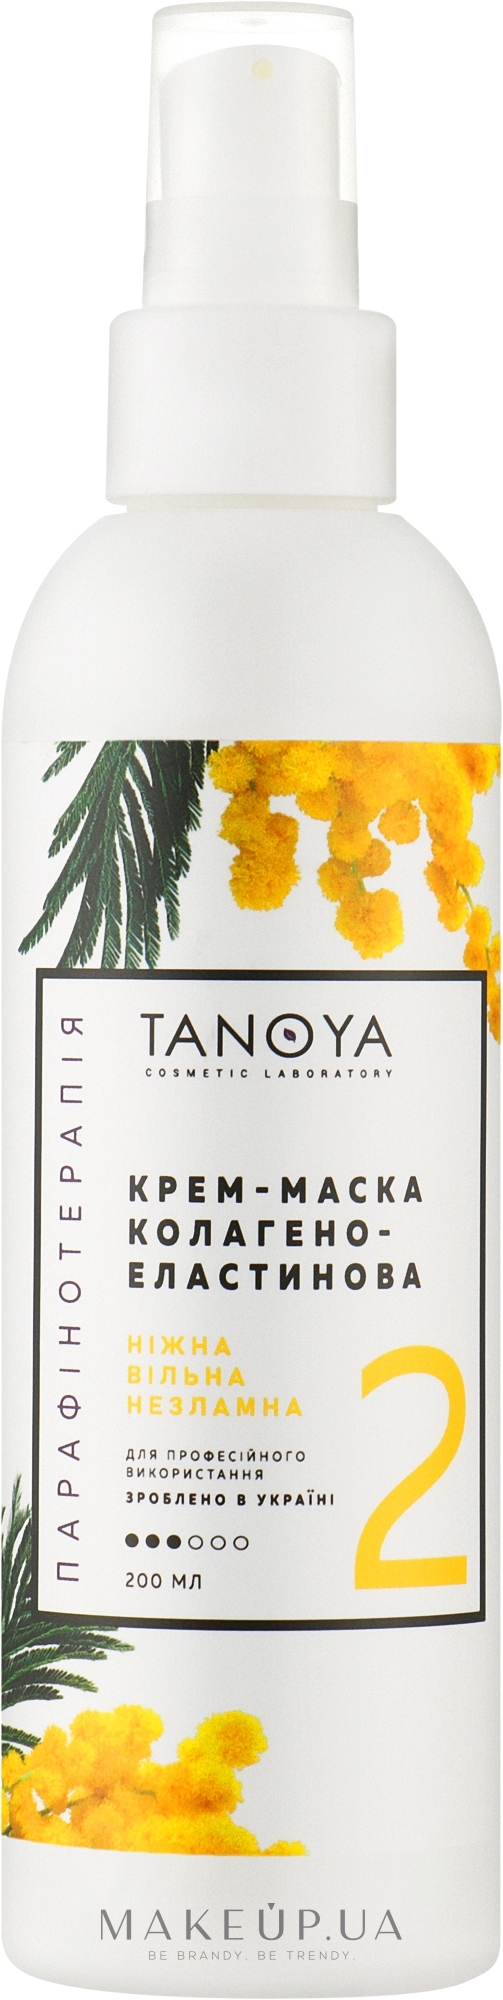 Крем-маска коллагено-эластиновая "Мимоза" - Tanoya Парафинотерапия Collagen Elastin Cream Mask Mimosa — фото 200ml